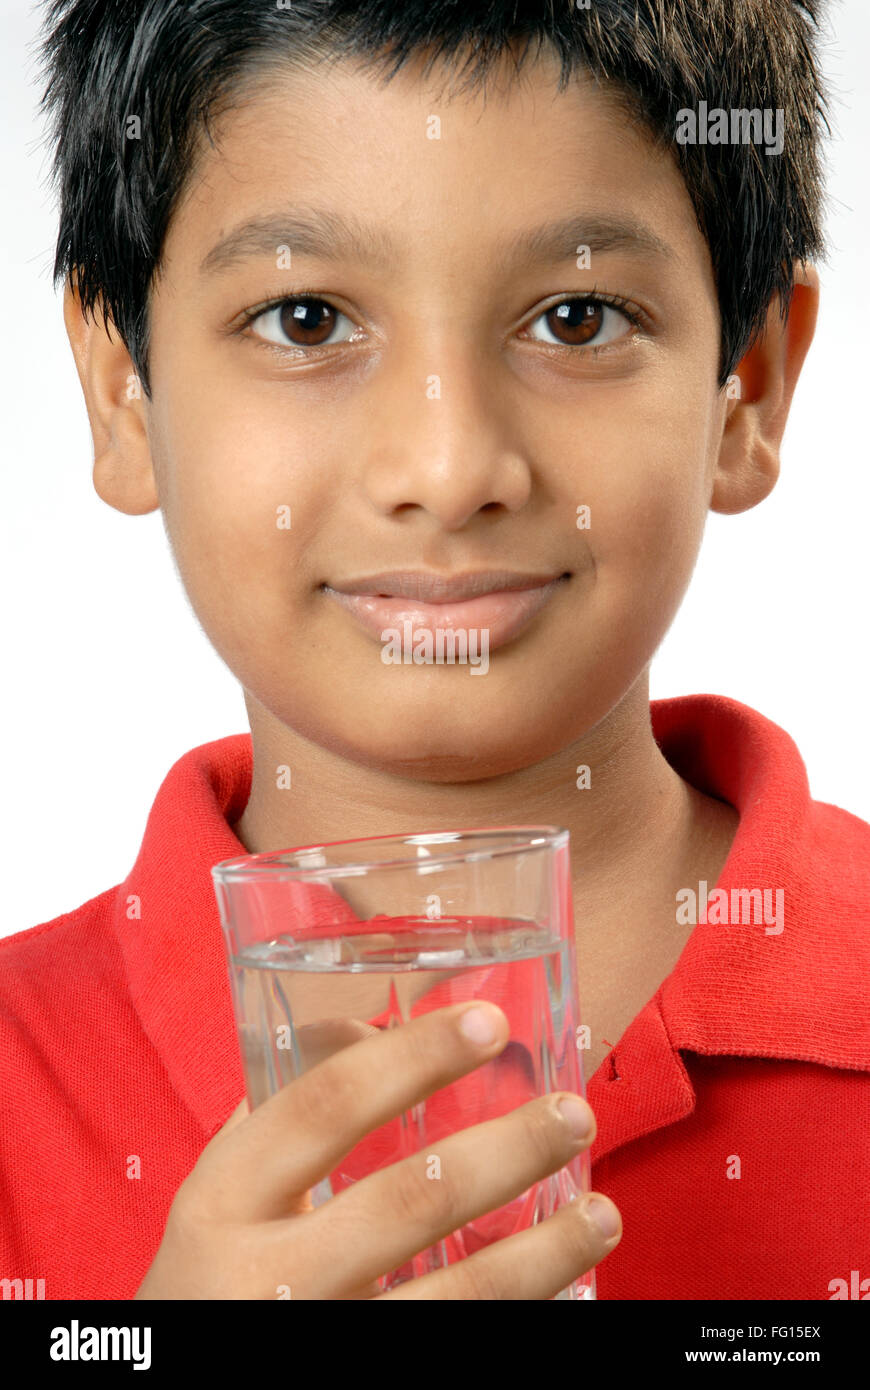 Les Indiens de l'Asie du Sud boy holding verre d'eau minérale à boire M.# 152 Banque D'Images